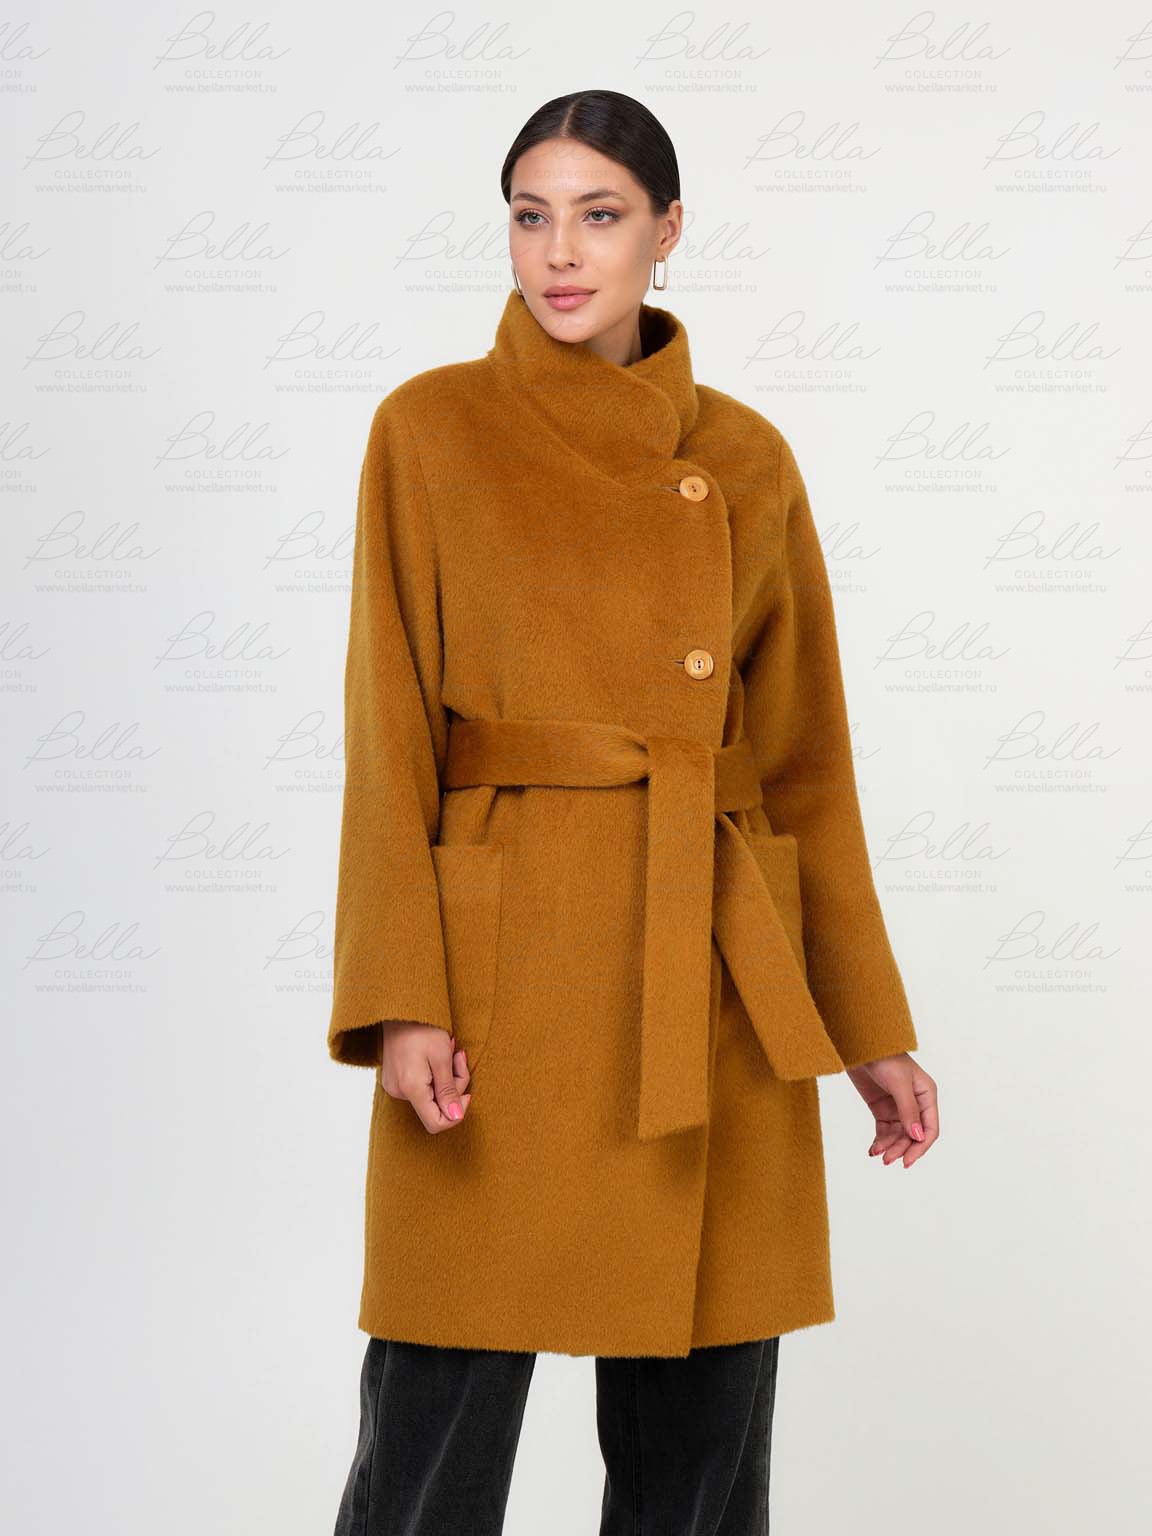 Bella collection пальто. Пудровое пальто Bella collection. Пальто горчичного цвета зима с капюшоном а образное.